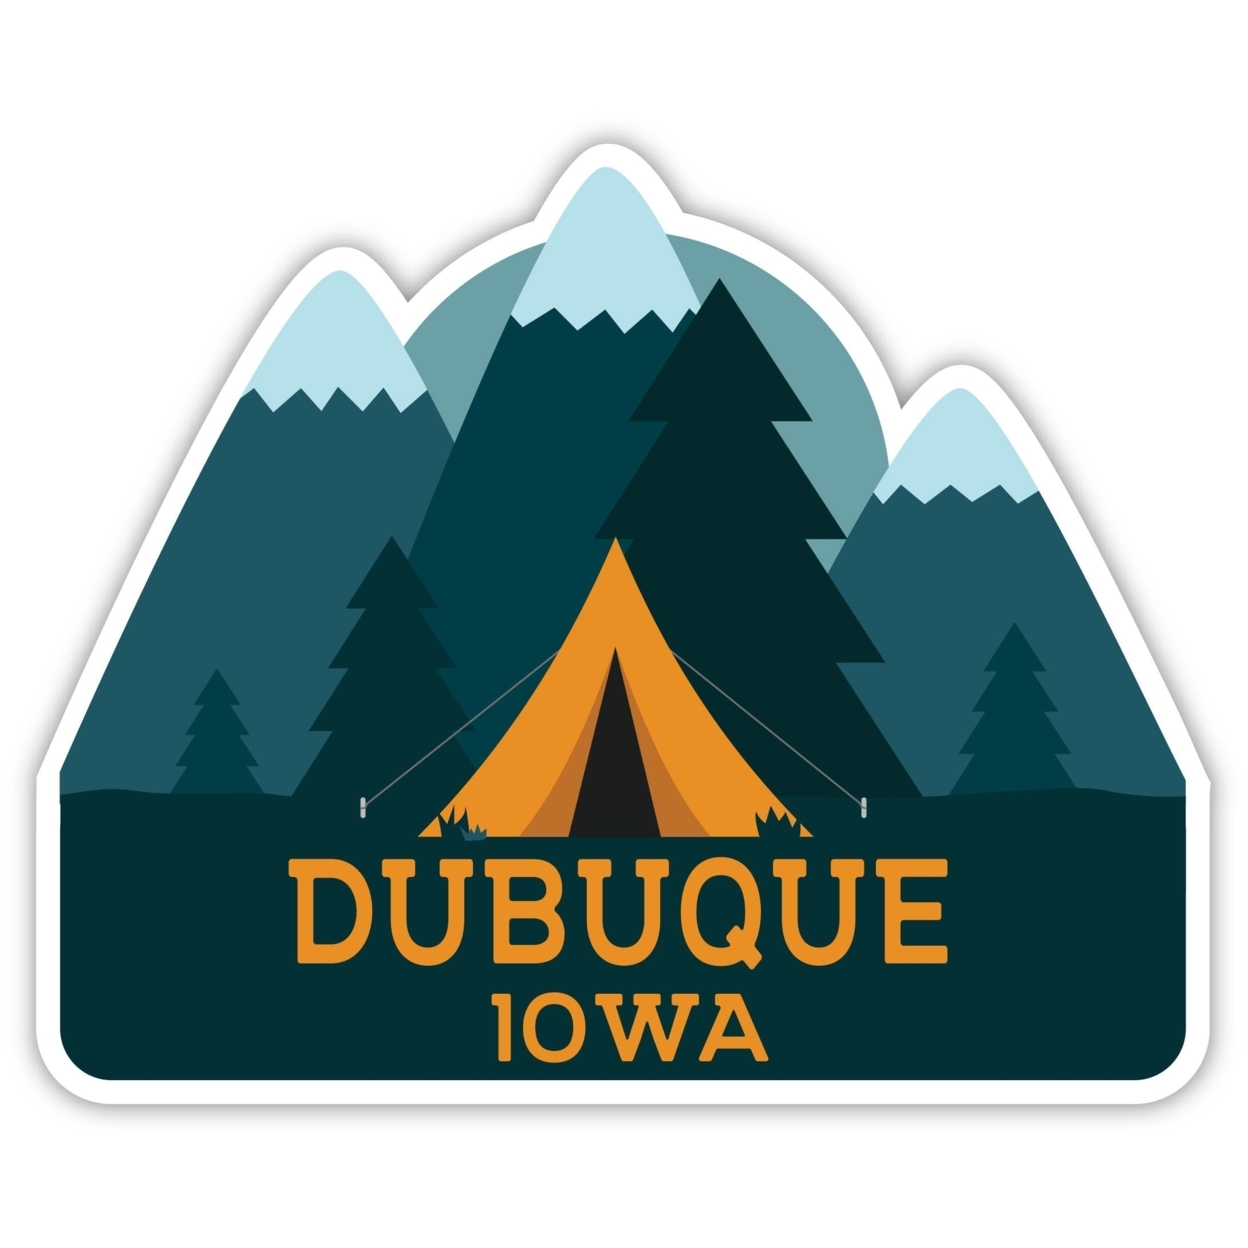 Dubuque Iowa Souvenir Decorative Stickers (Choose Theme And Size) - Single Unit, 6-Inch, Tent